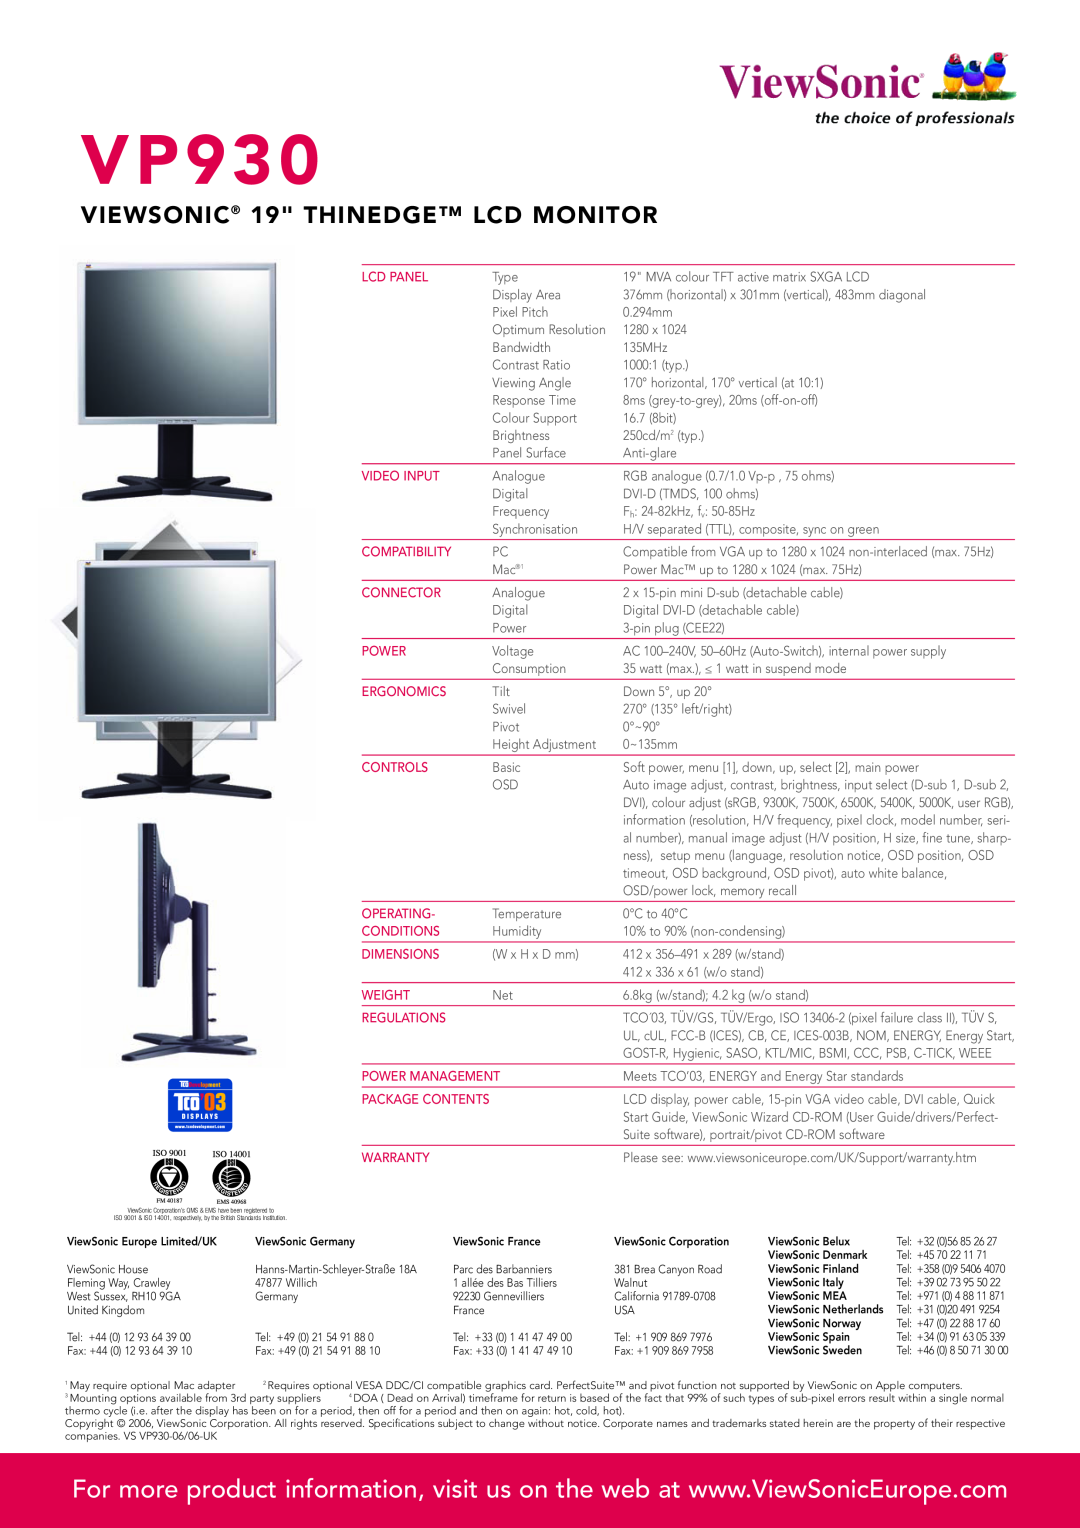 ViewSonic VP930 manual VIEWSONIC 19 THINEDGE LCD MONITOR, V P 9 3 